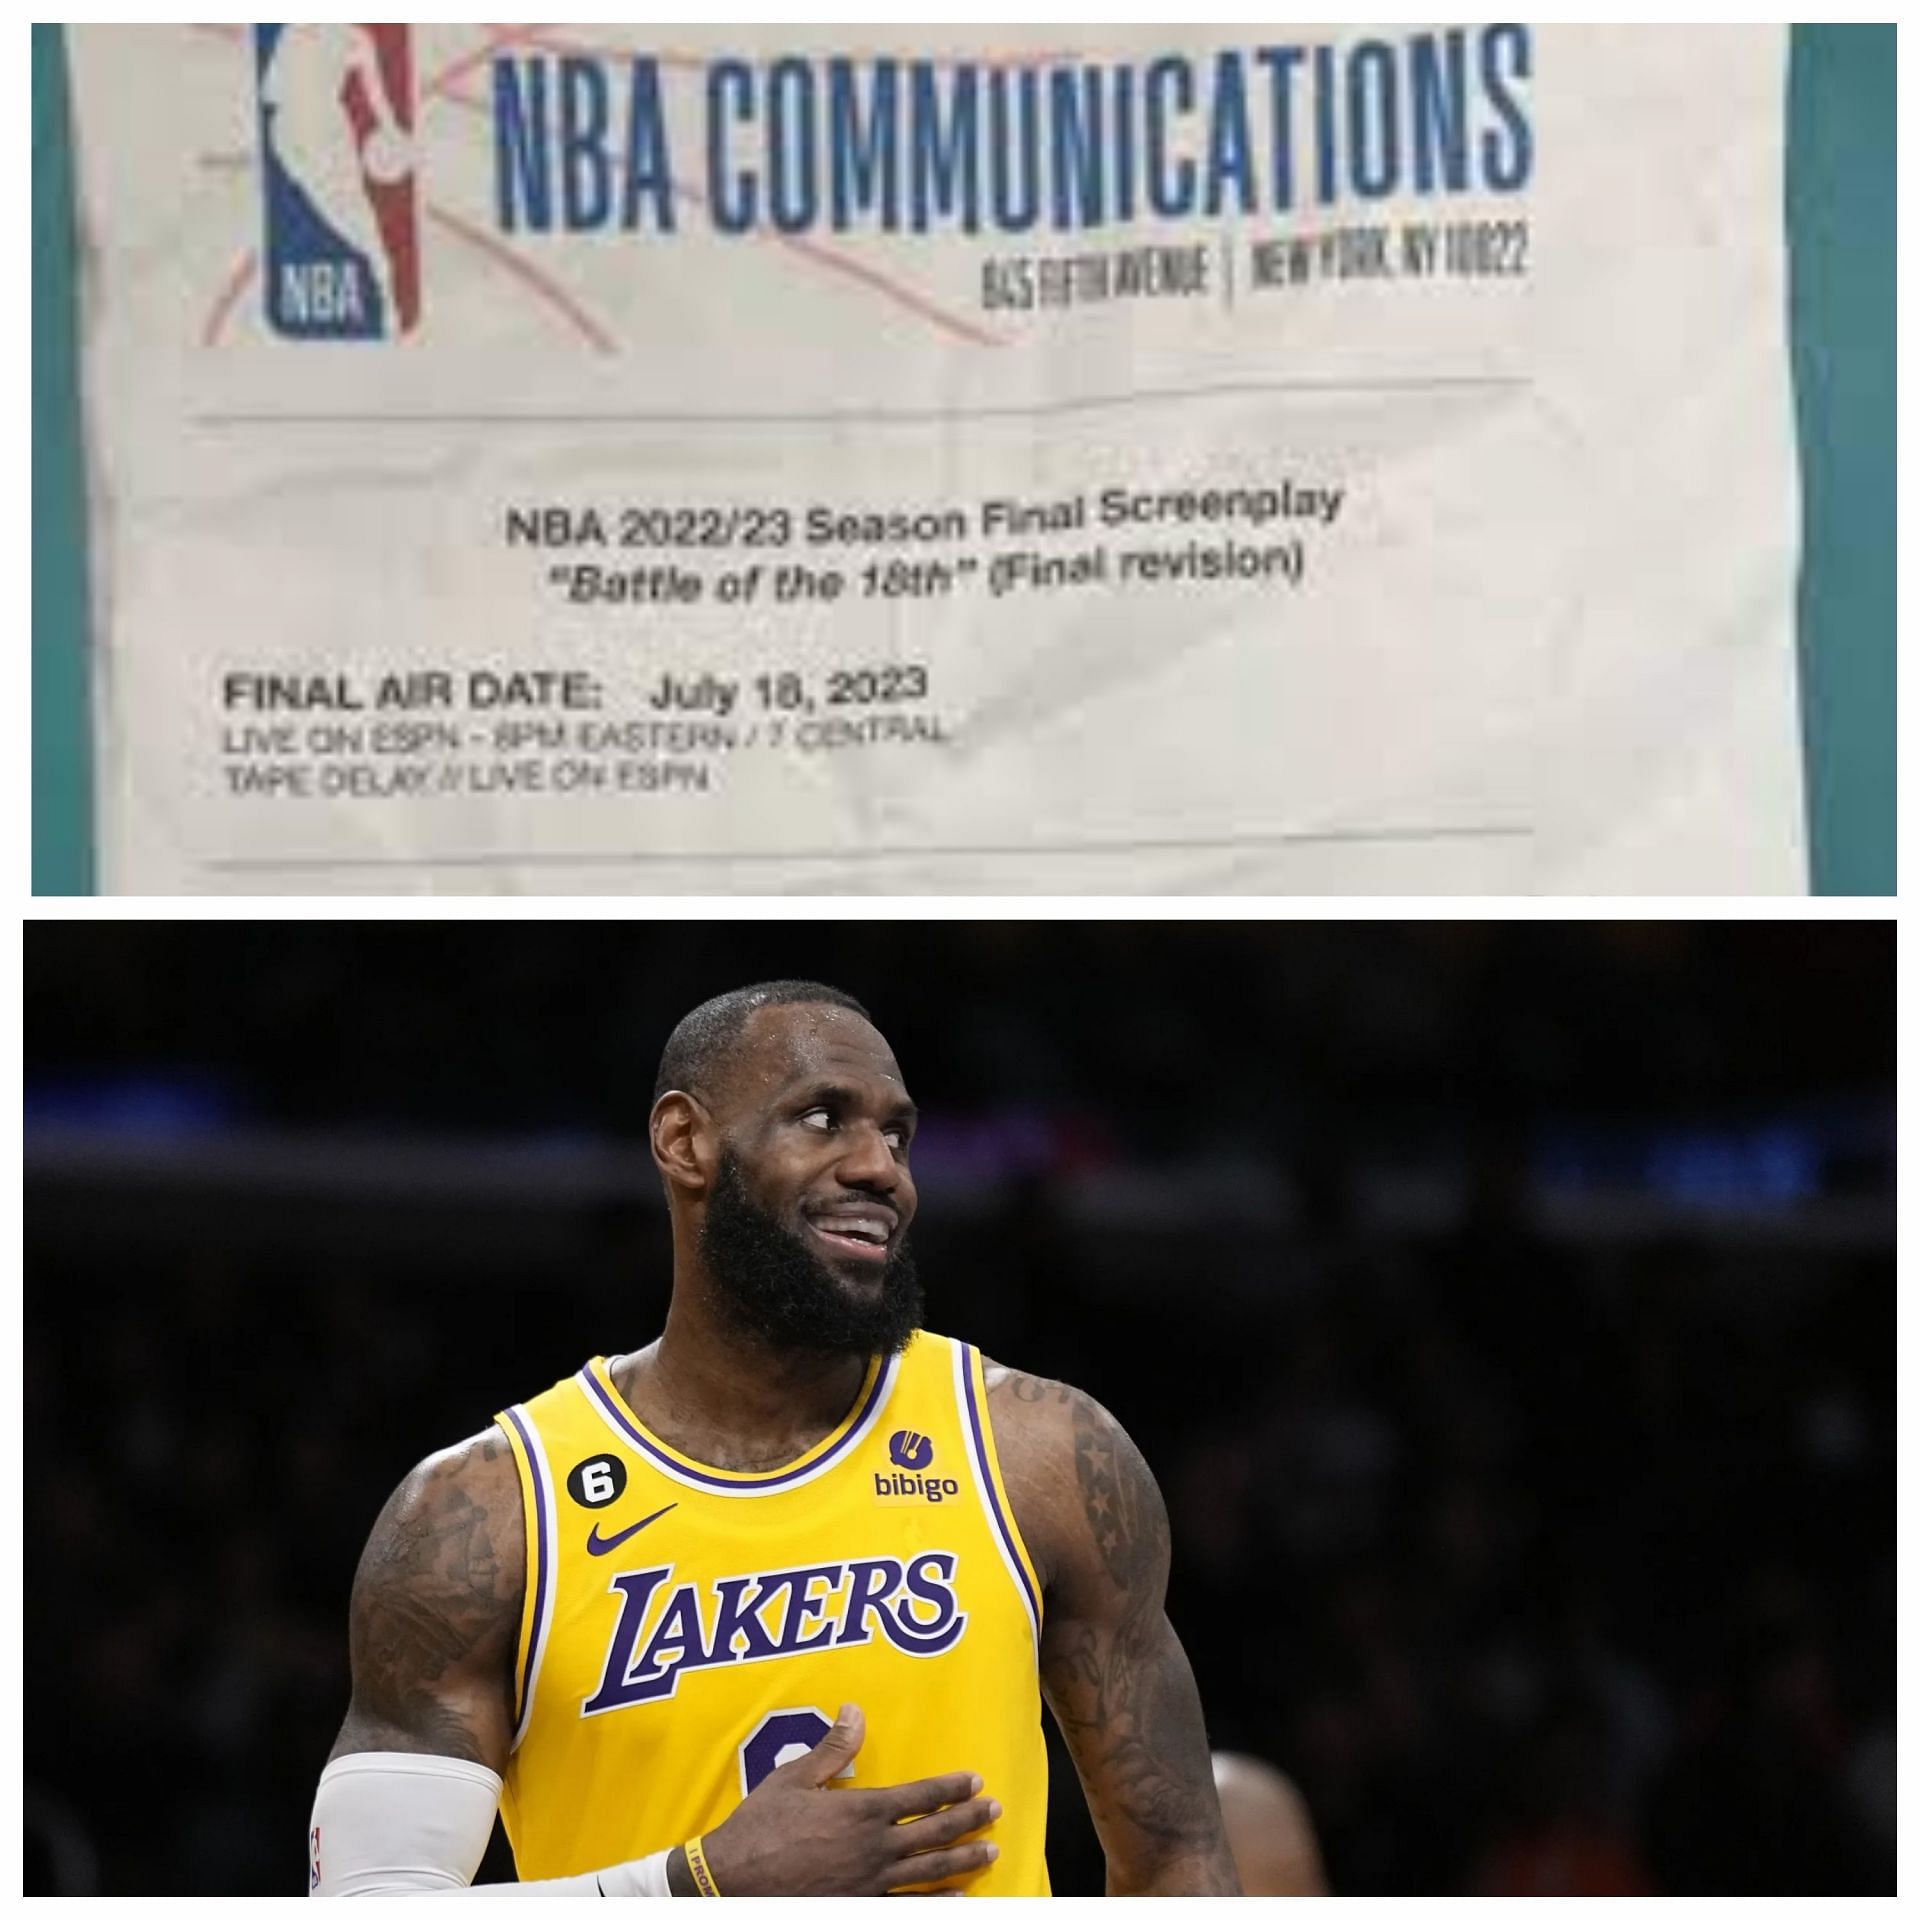 Did NBA script get leaked? Debunking rumors